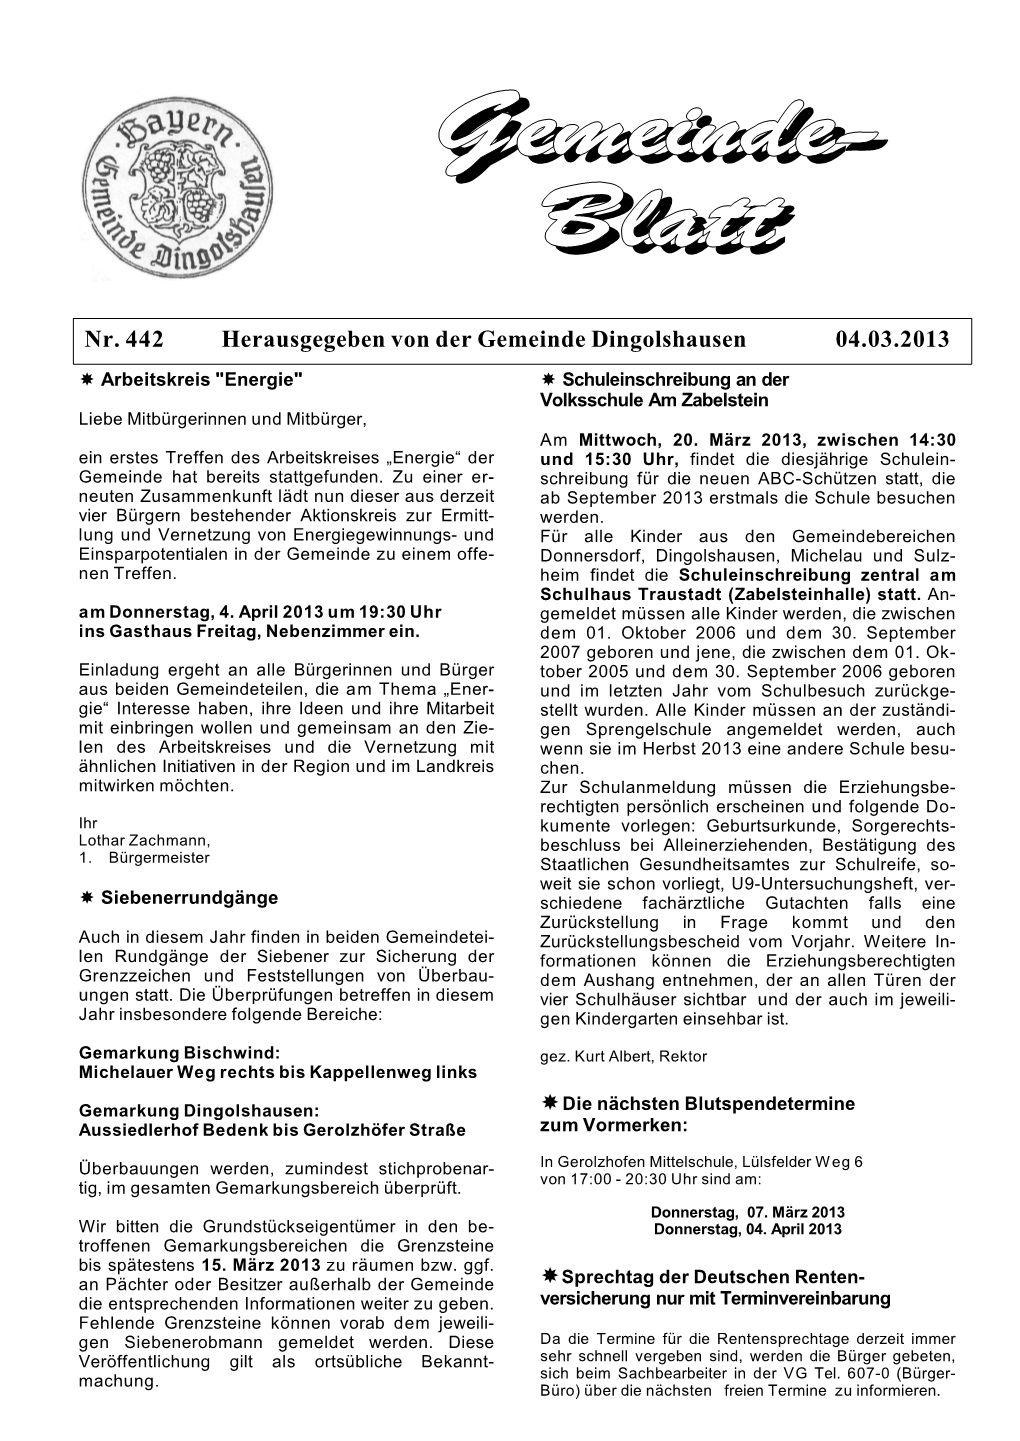 Nr. 442 Herausgegeben Von Der Gemeinde Dingolshausen 04.03